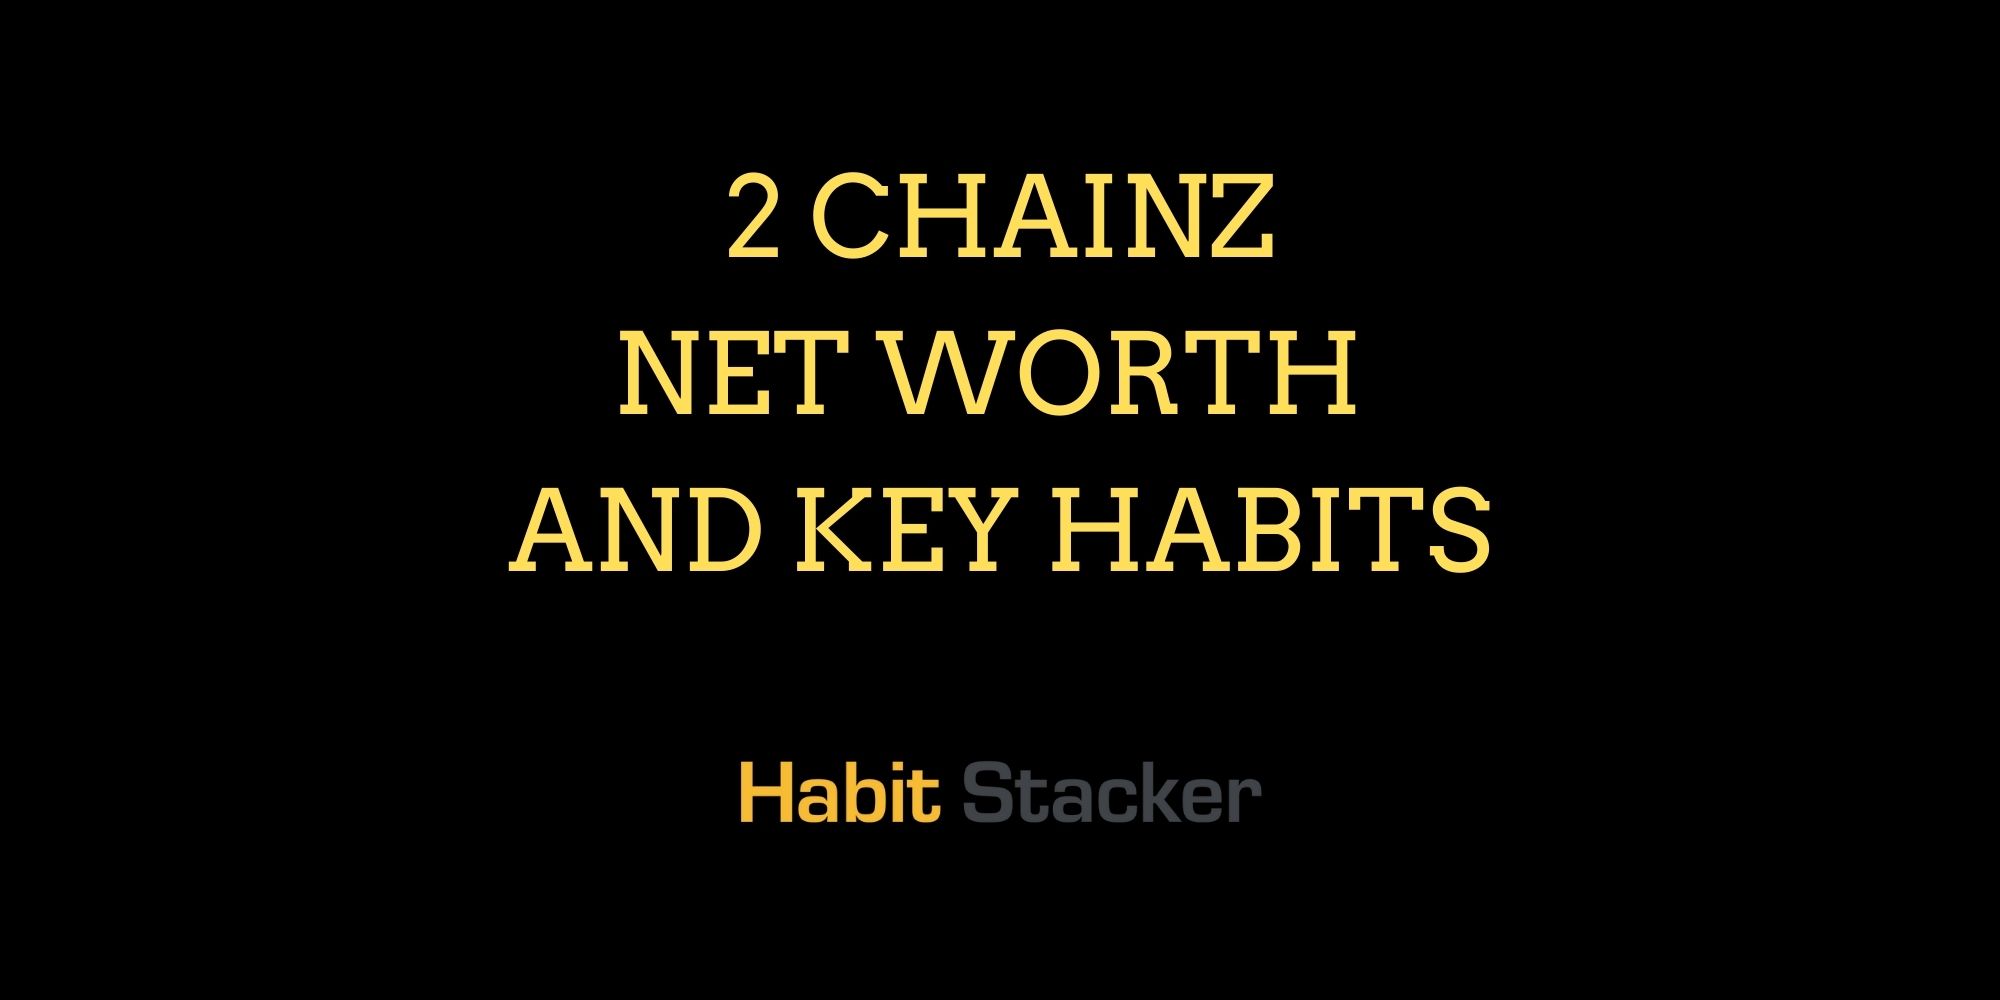 2 Chainz Net Worth